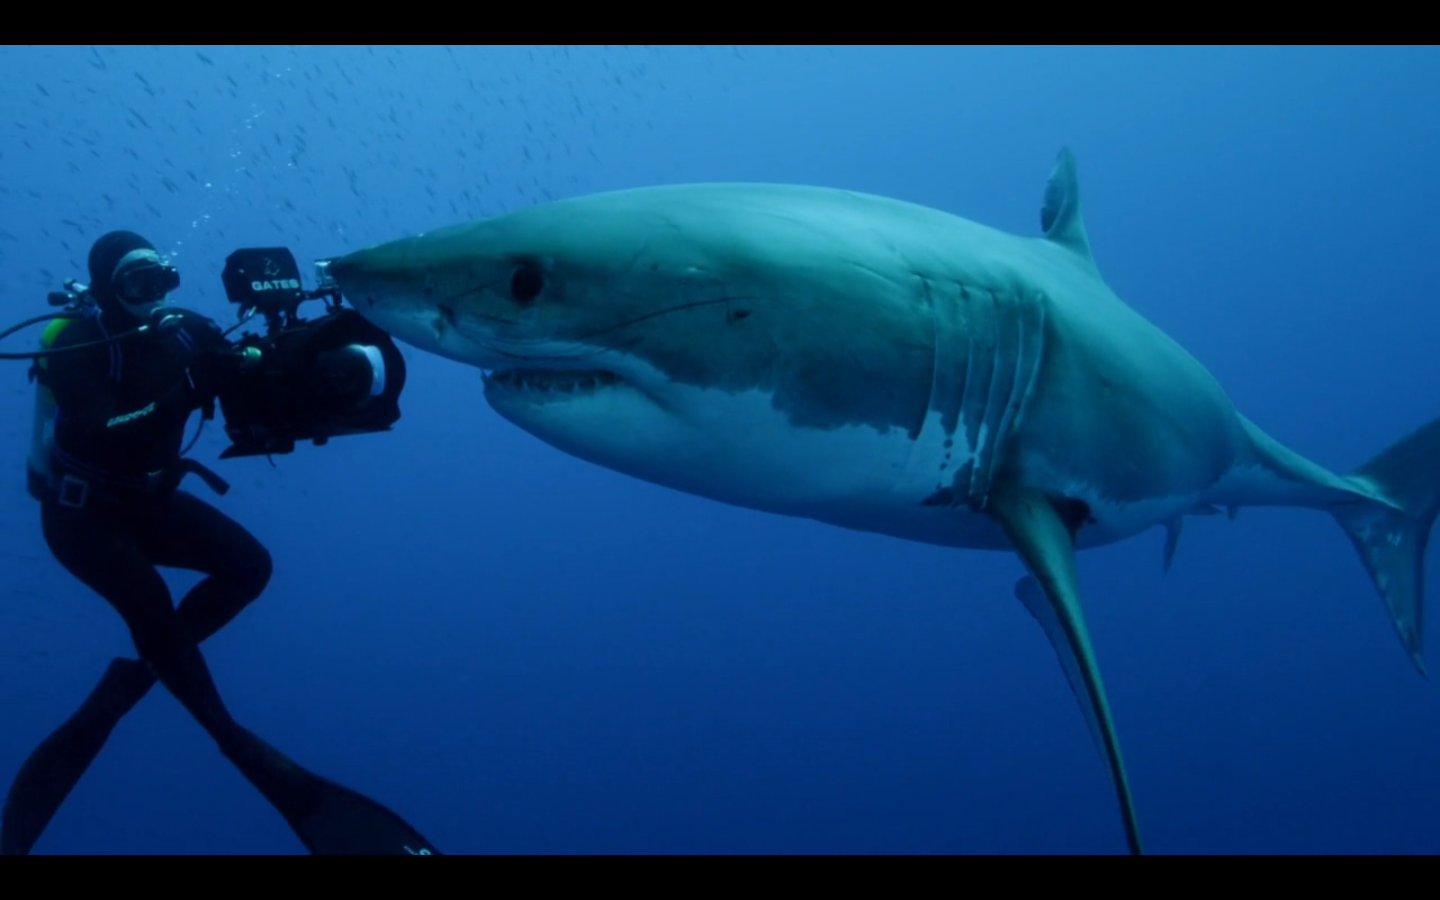 职业冲浪运动员比利·肯珀在著名的大白鲨巨浪冲浪休息时乘坐巨浪图片下载 - 觅知网